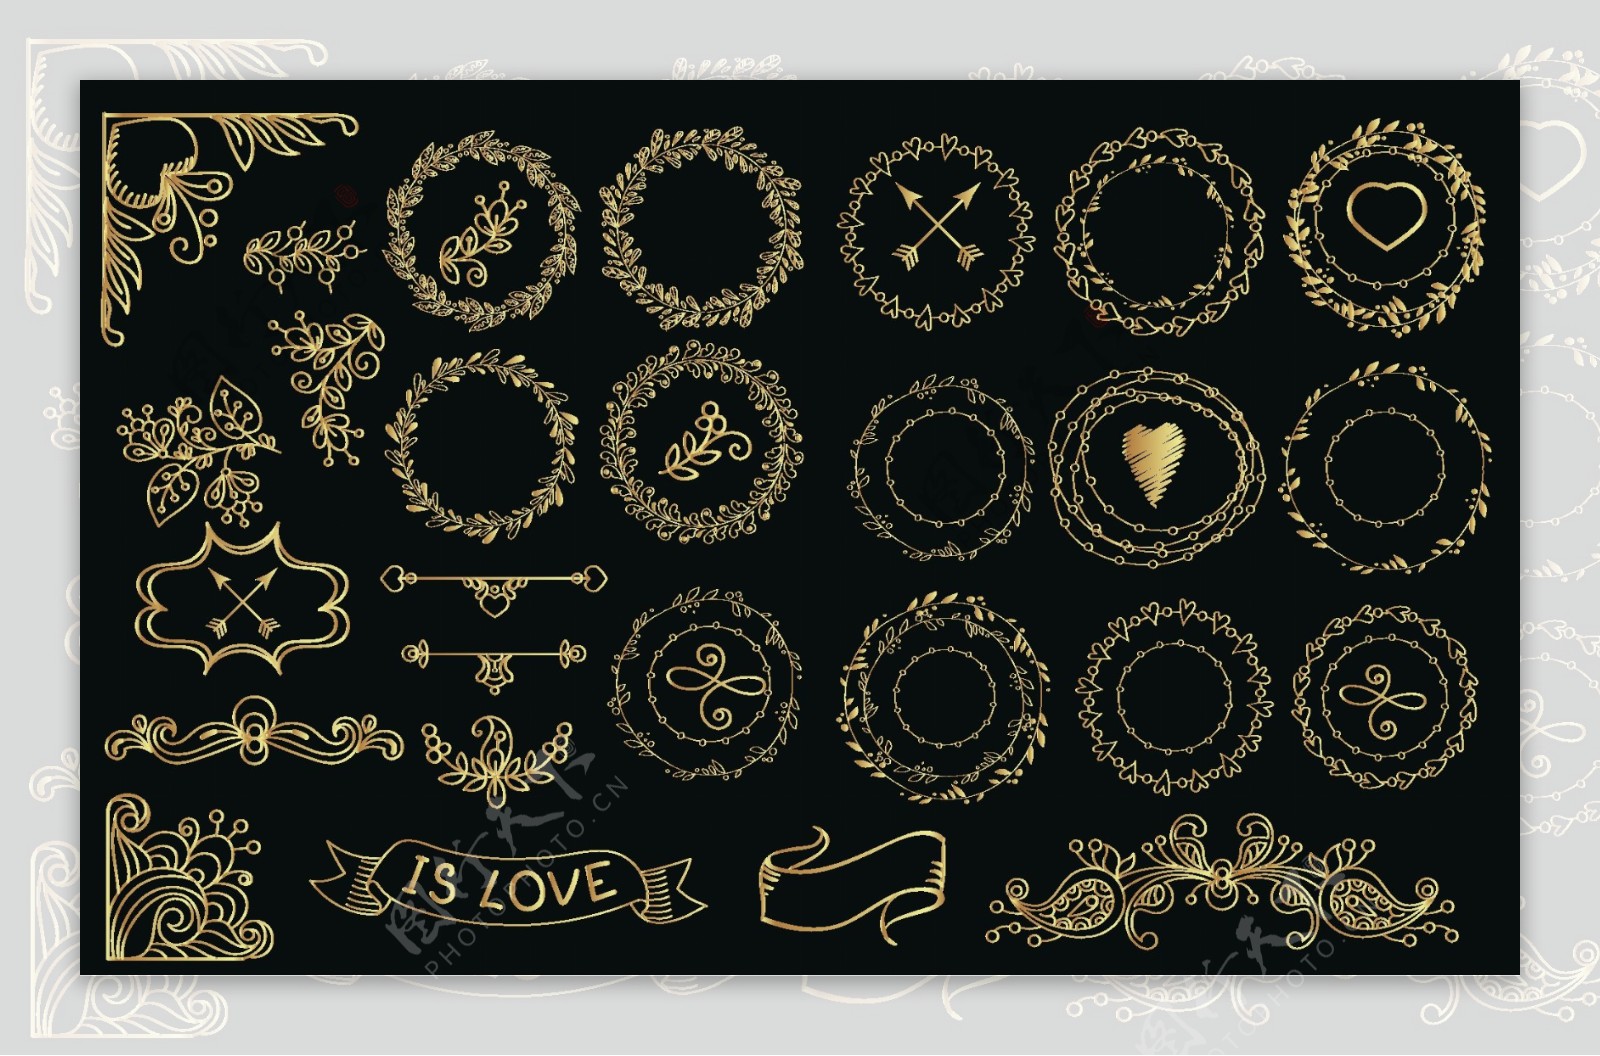 手工绘制的金桂冠和花环收藏